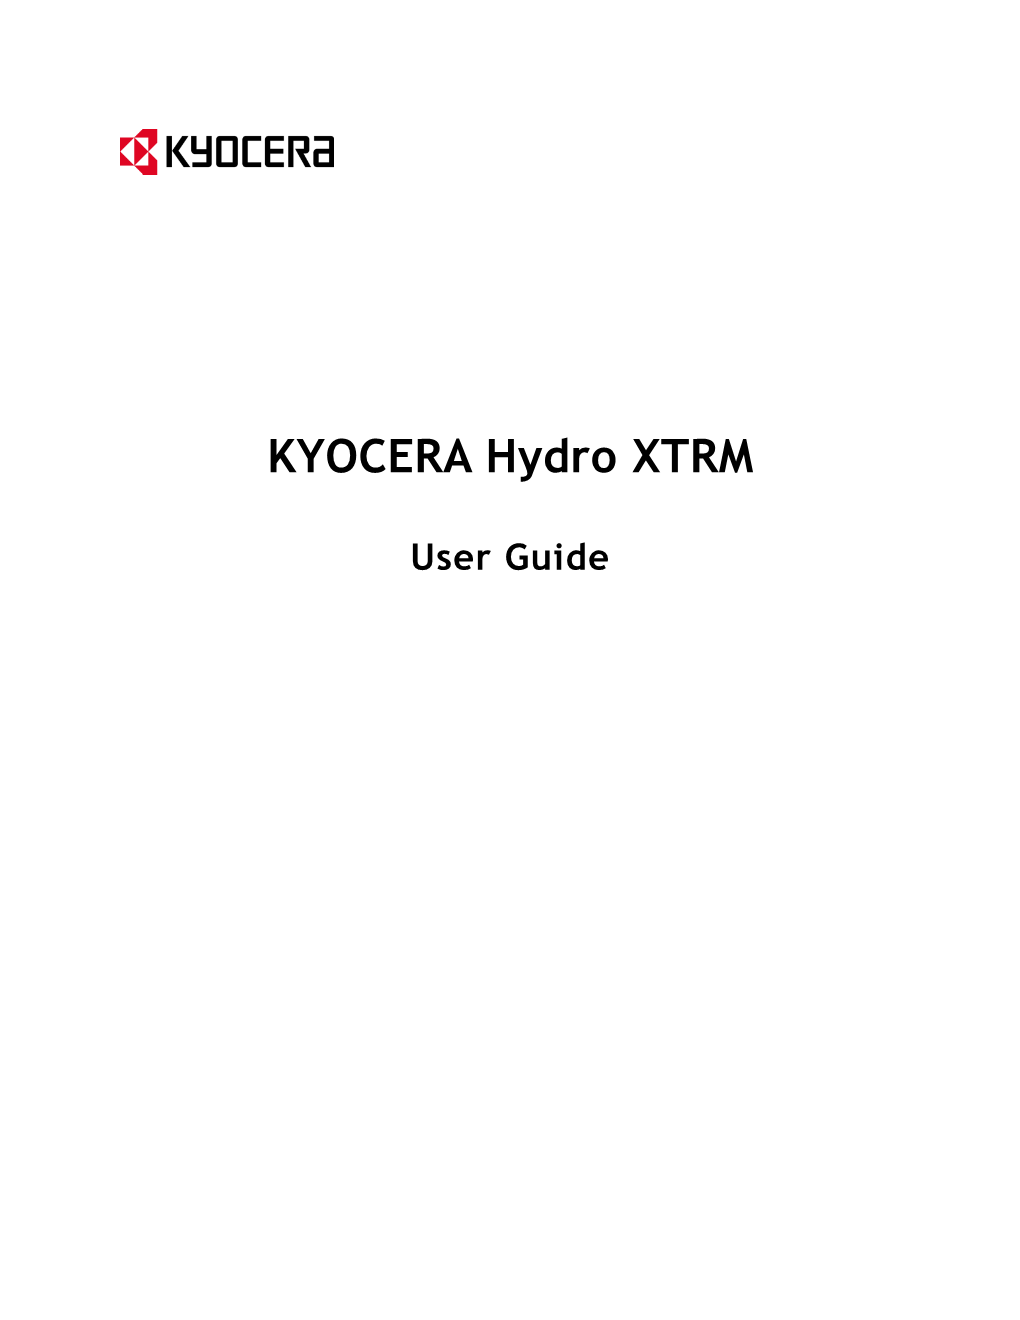 KYOCERA Hydro XTRM